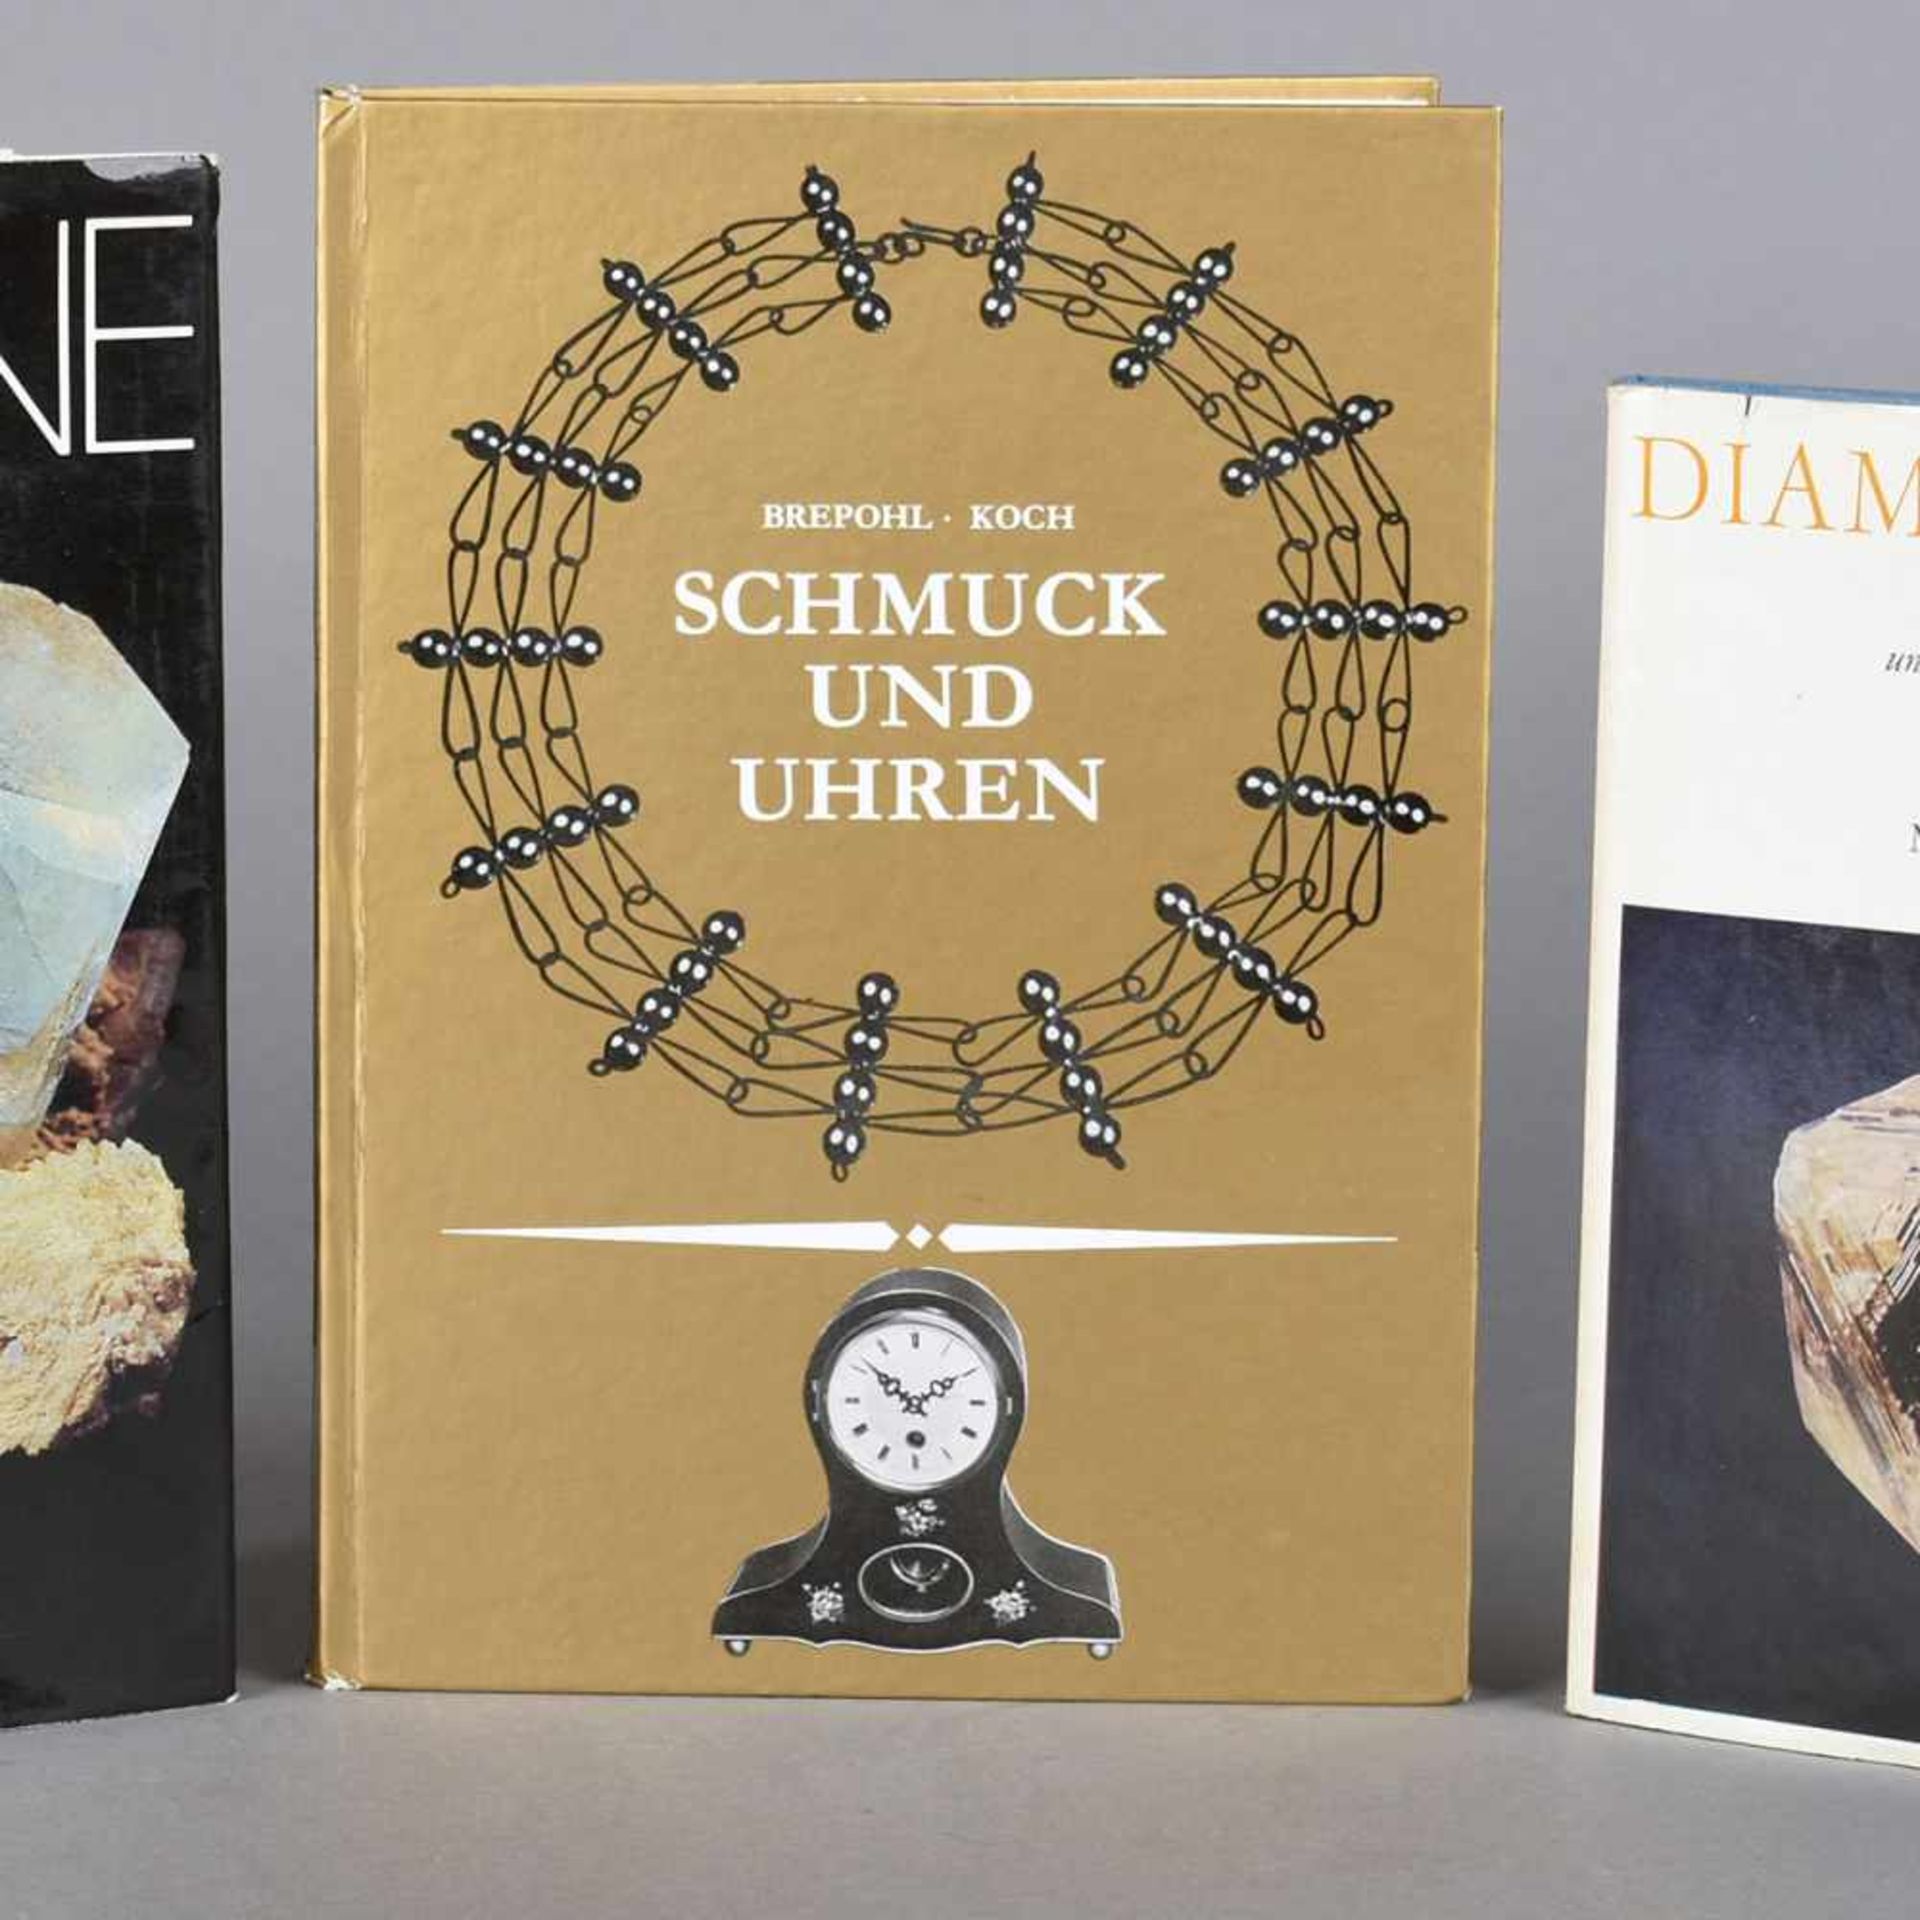 Konvolut Literatur über Schmuck und Edelsteine insg. 3 Ausgaben, 1 x Milaschow "Diamanten. Legende